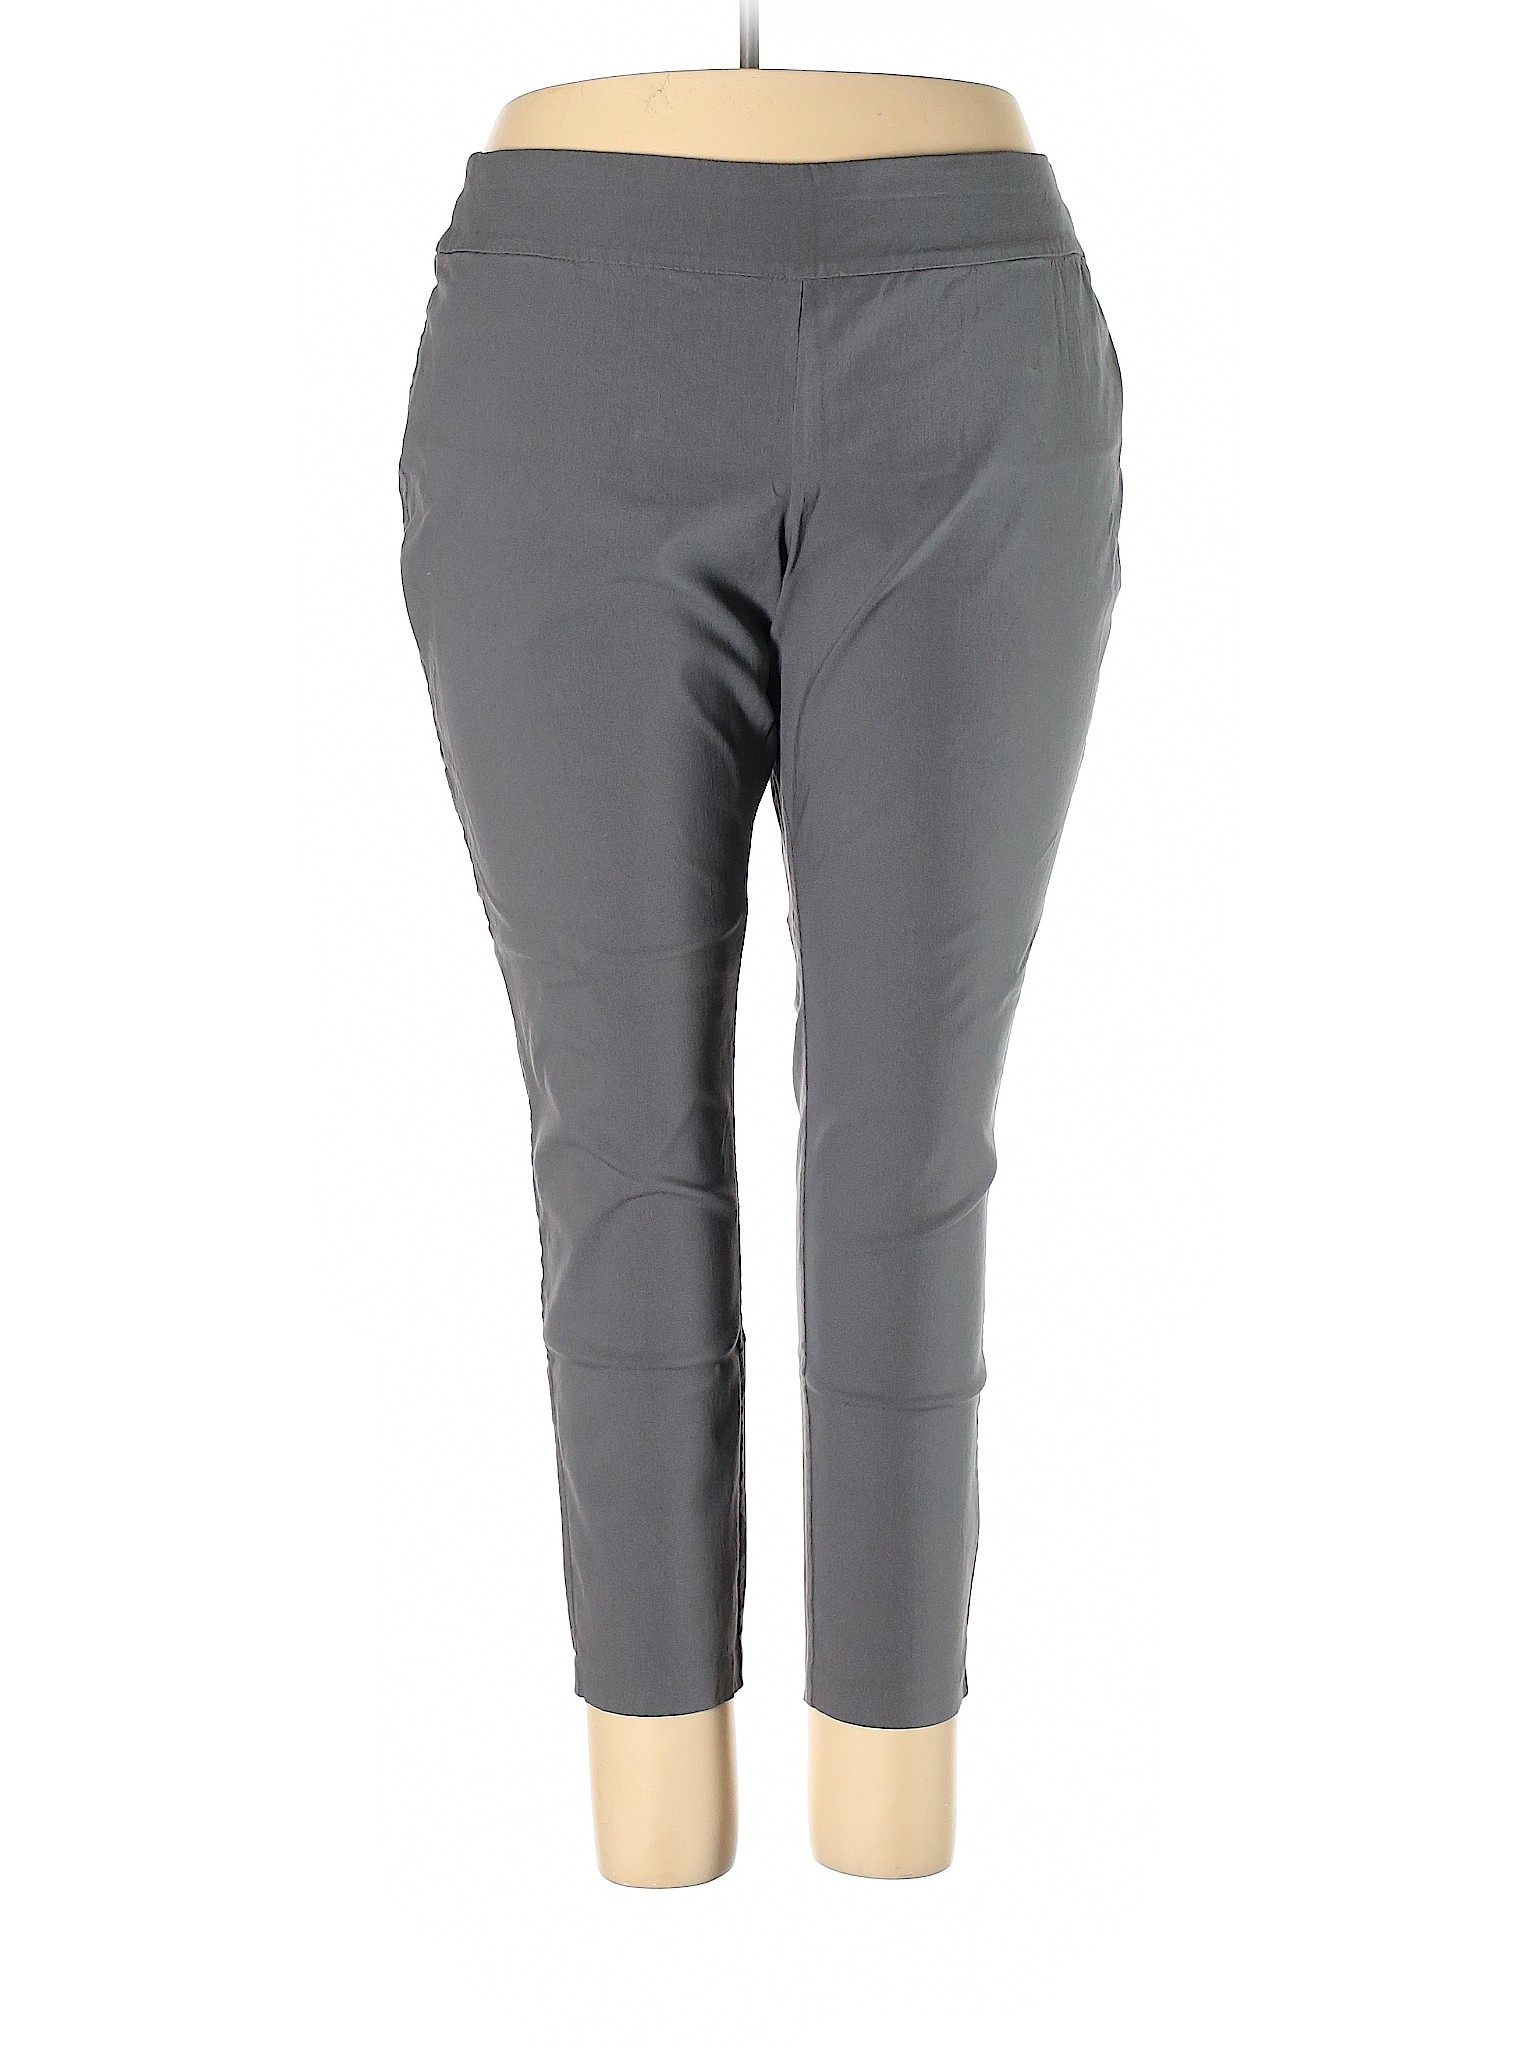 Cj Banks Women Gray Casual Pants 20 Plus | eBay